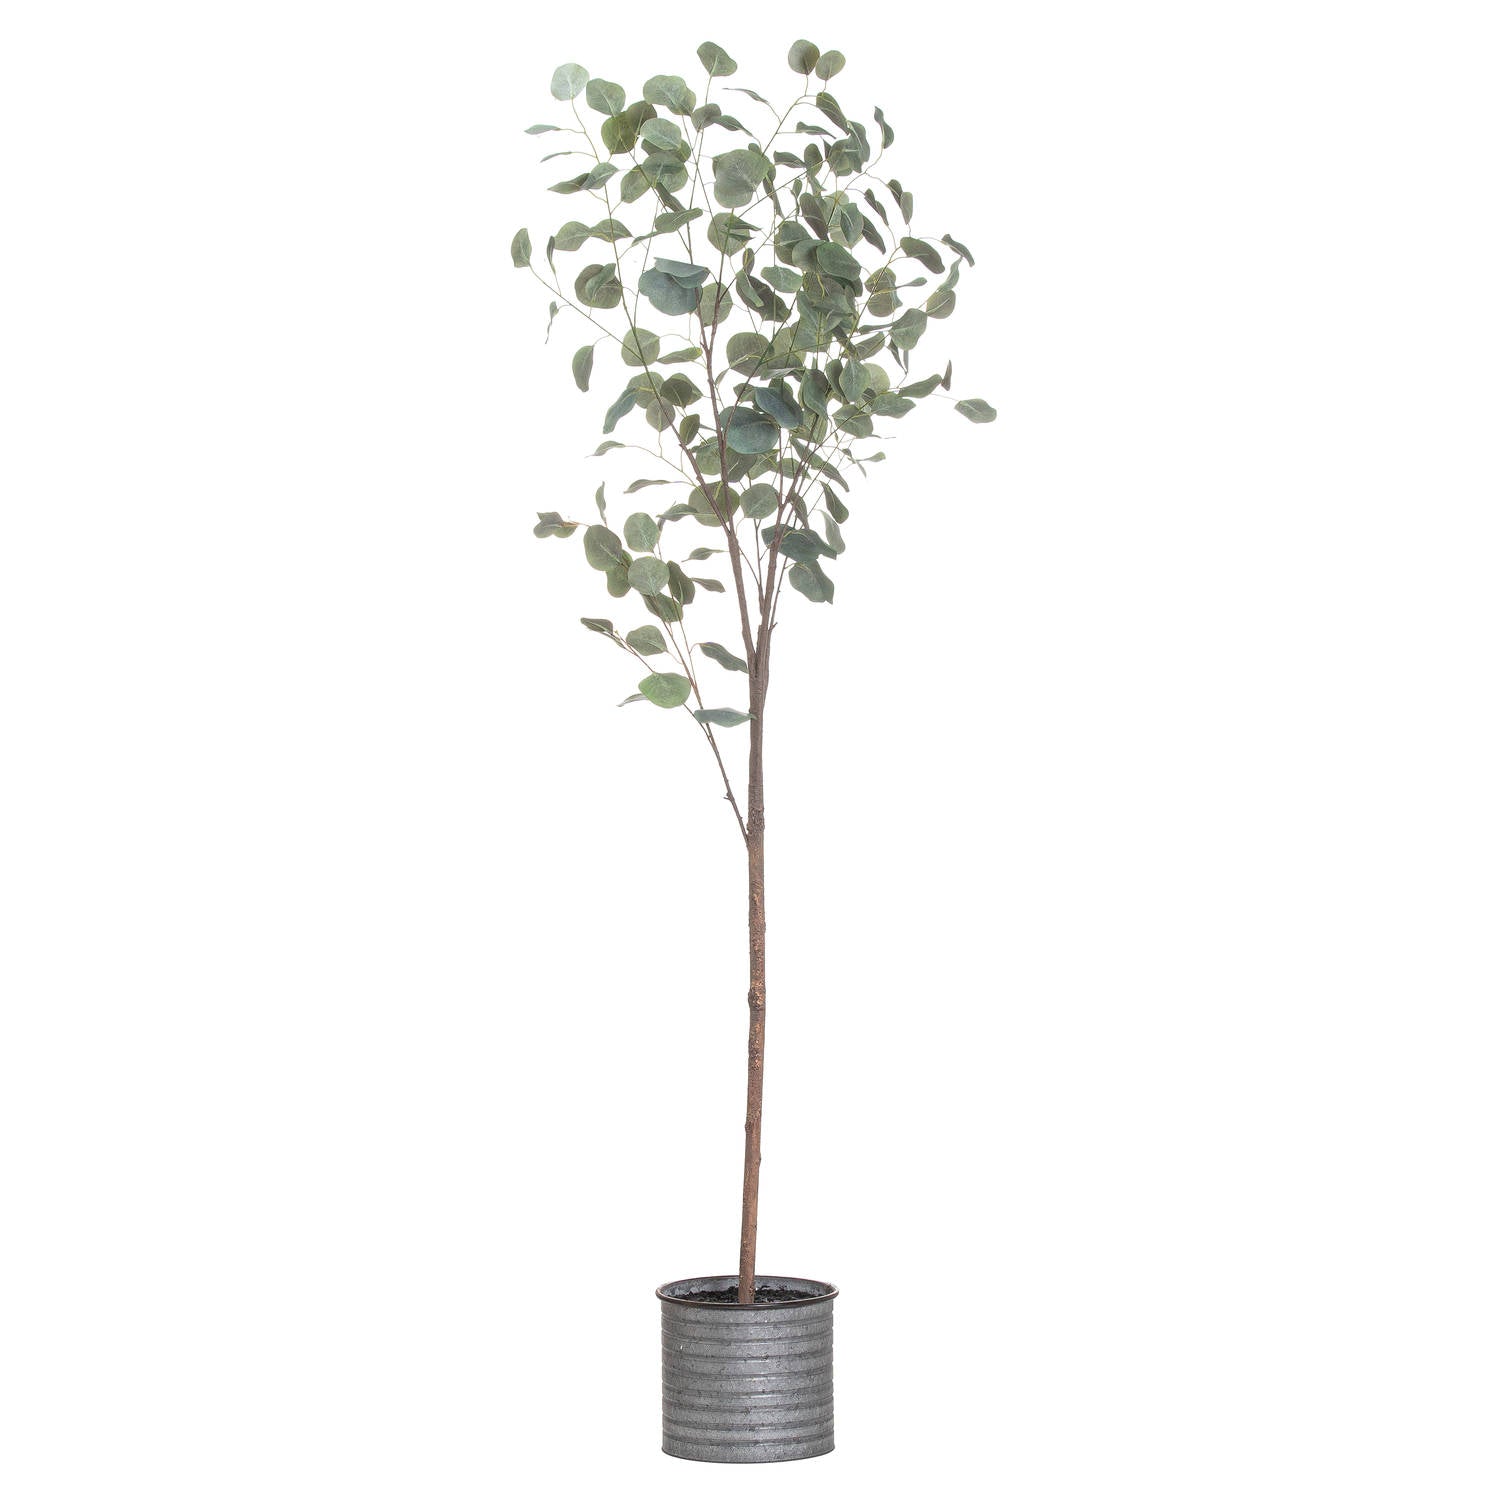 View Large Eucalyptus Tree In Metallic Pot information